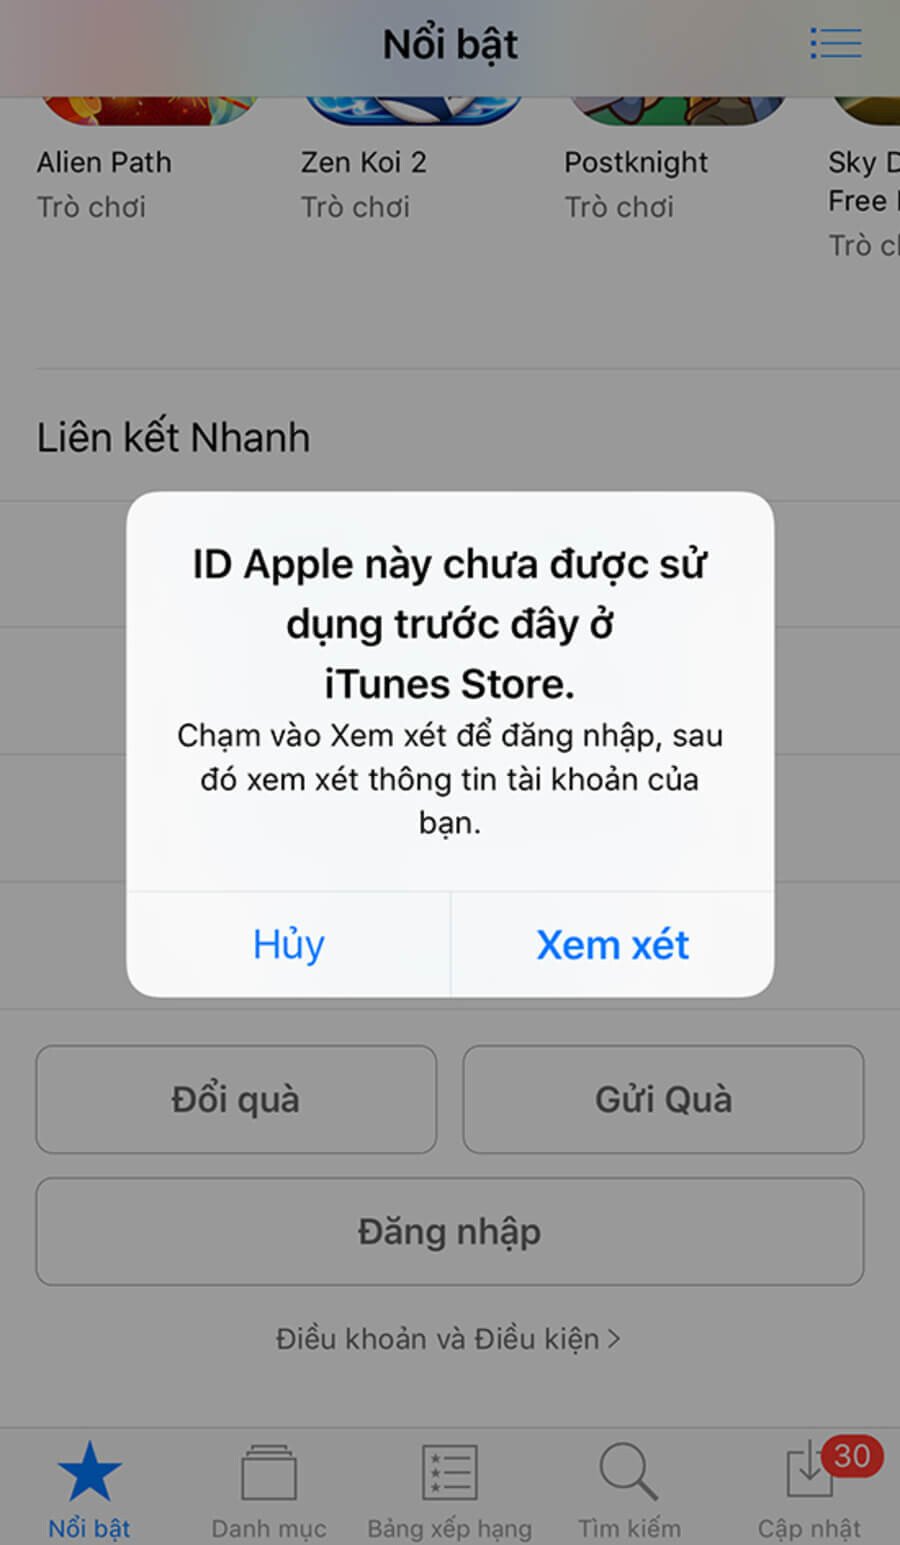 Hướng dẫn tạo tài khoản Apple ID trong 3 phút bằng iPhone - Hình 9